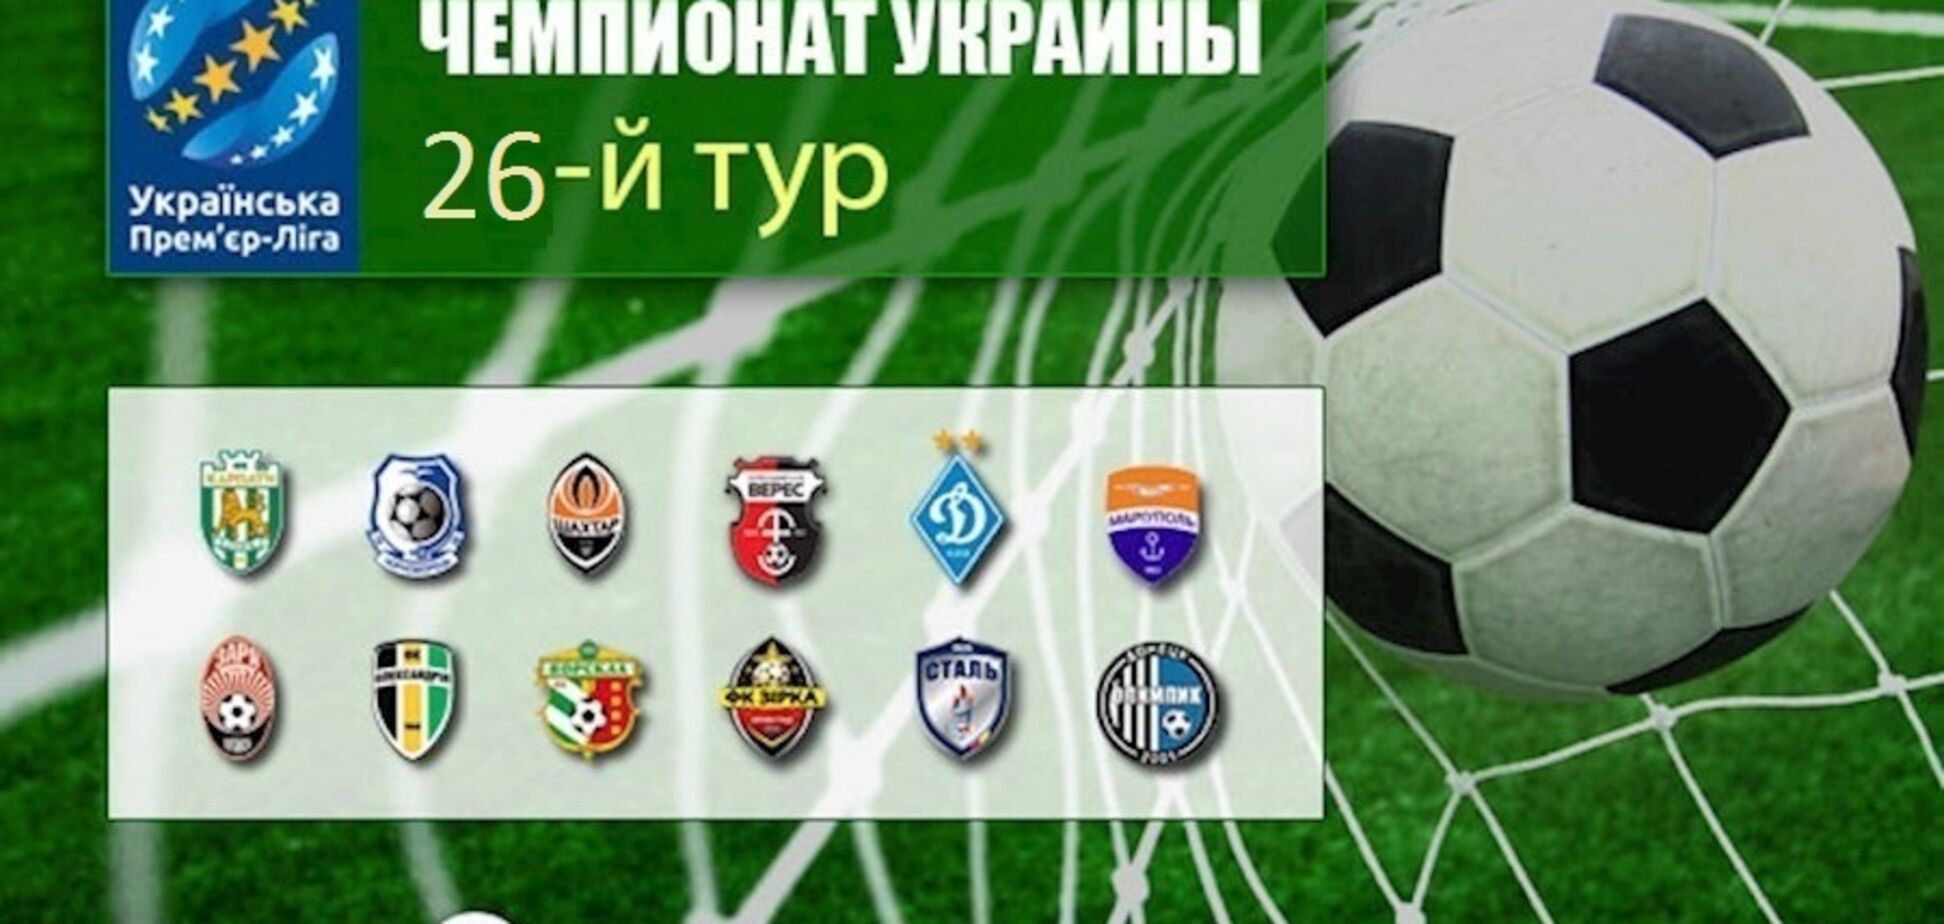 26-й тур чемпионата Украины по футболу: результаты и видео обзоры матчей